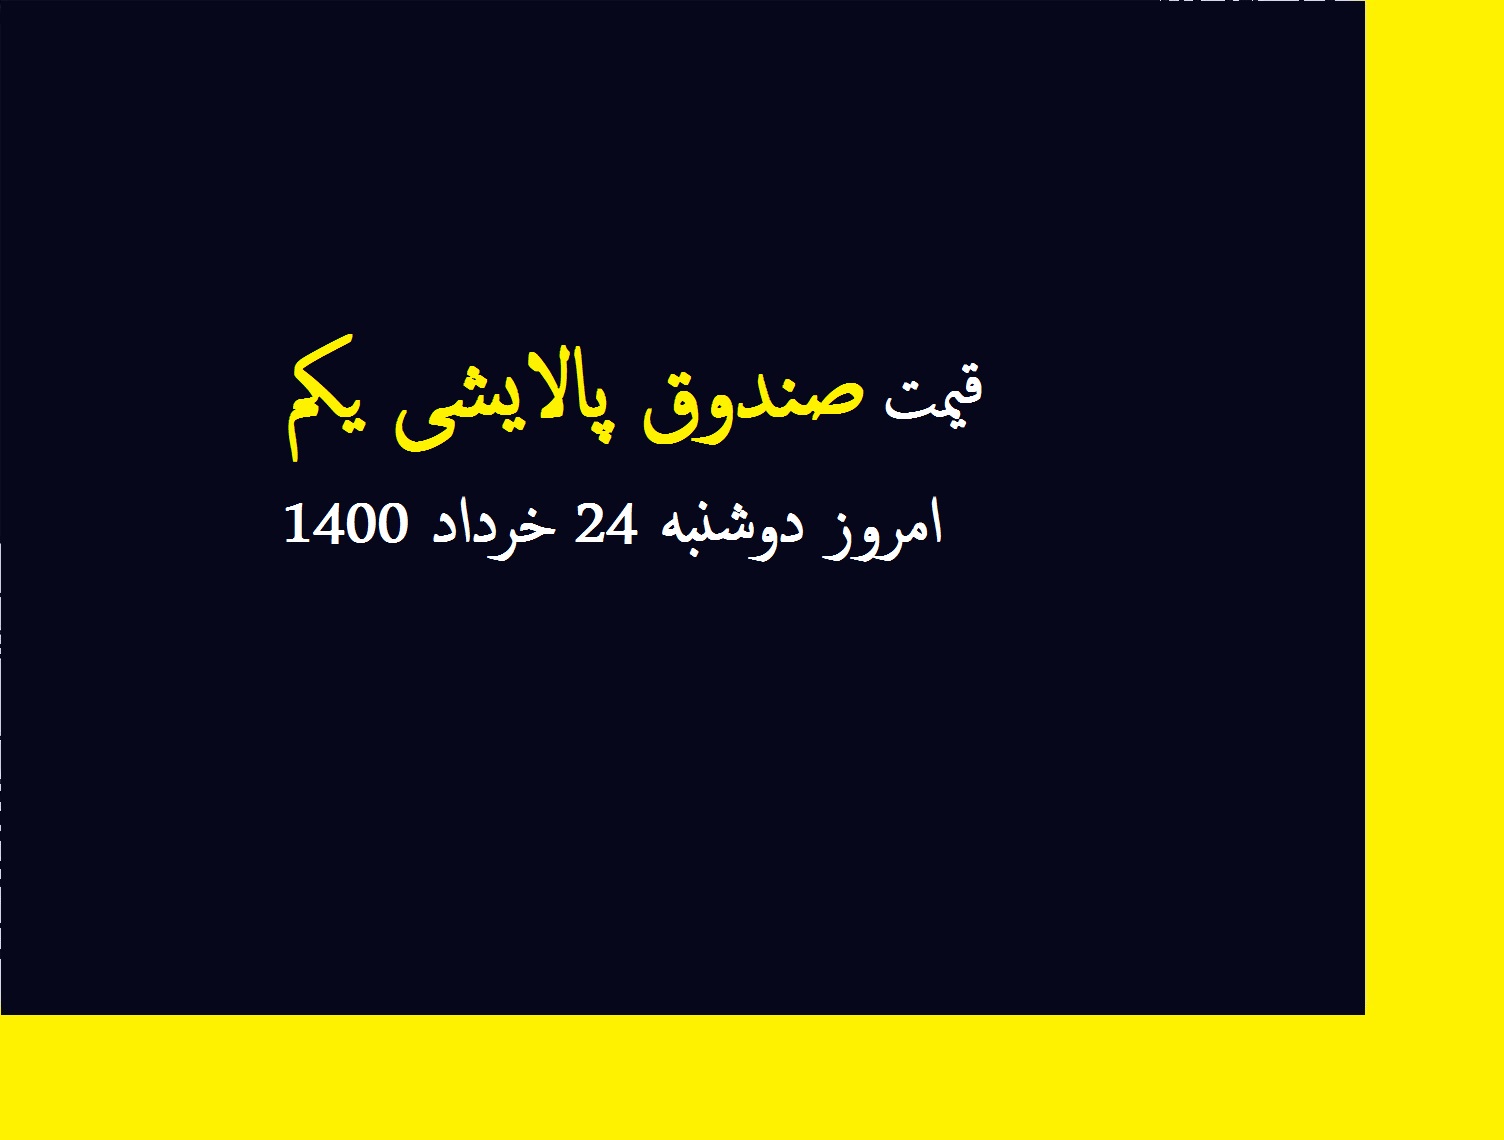 قیمت صندوق پالایشی یکم امروز دوشنبه 24 خرداد 1400